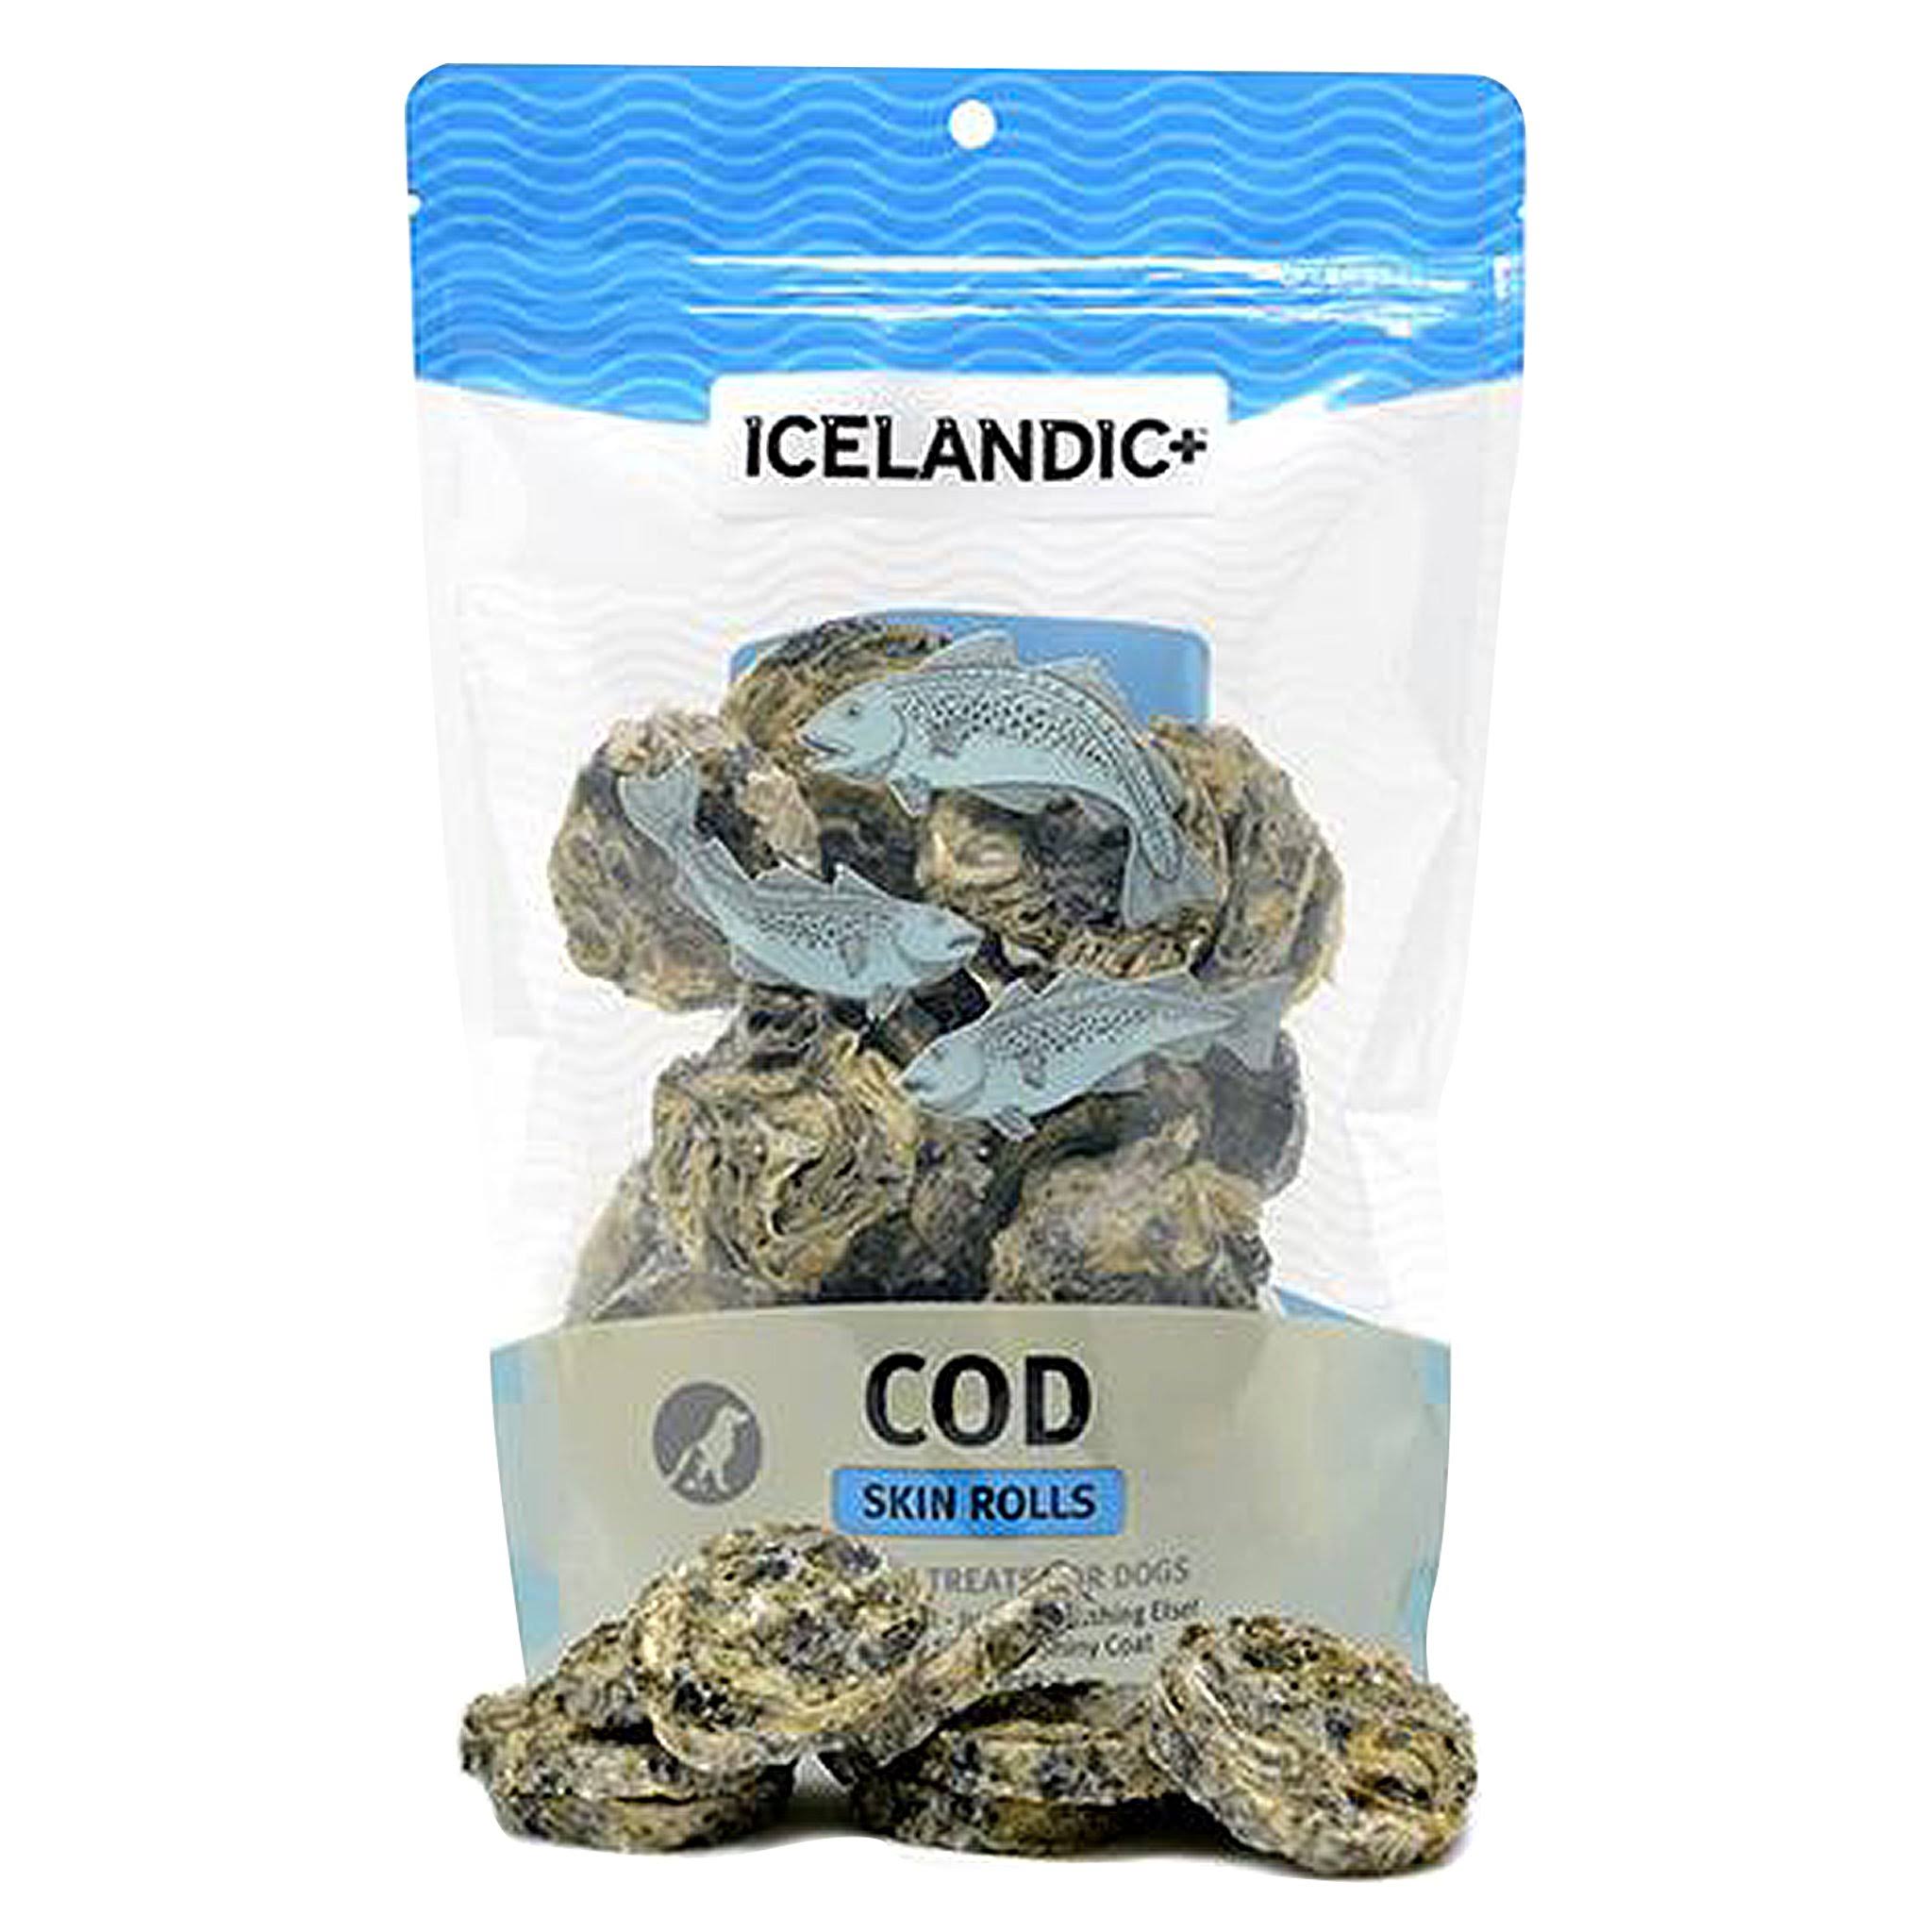 Icelandic+ Cod Skin Rolls - 3 oz